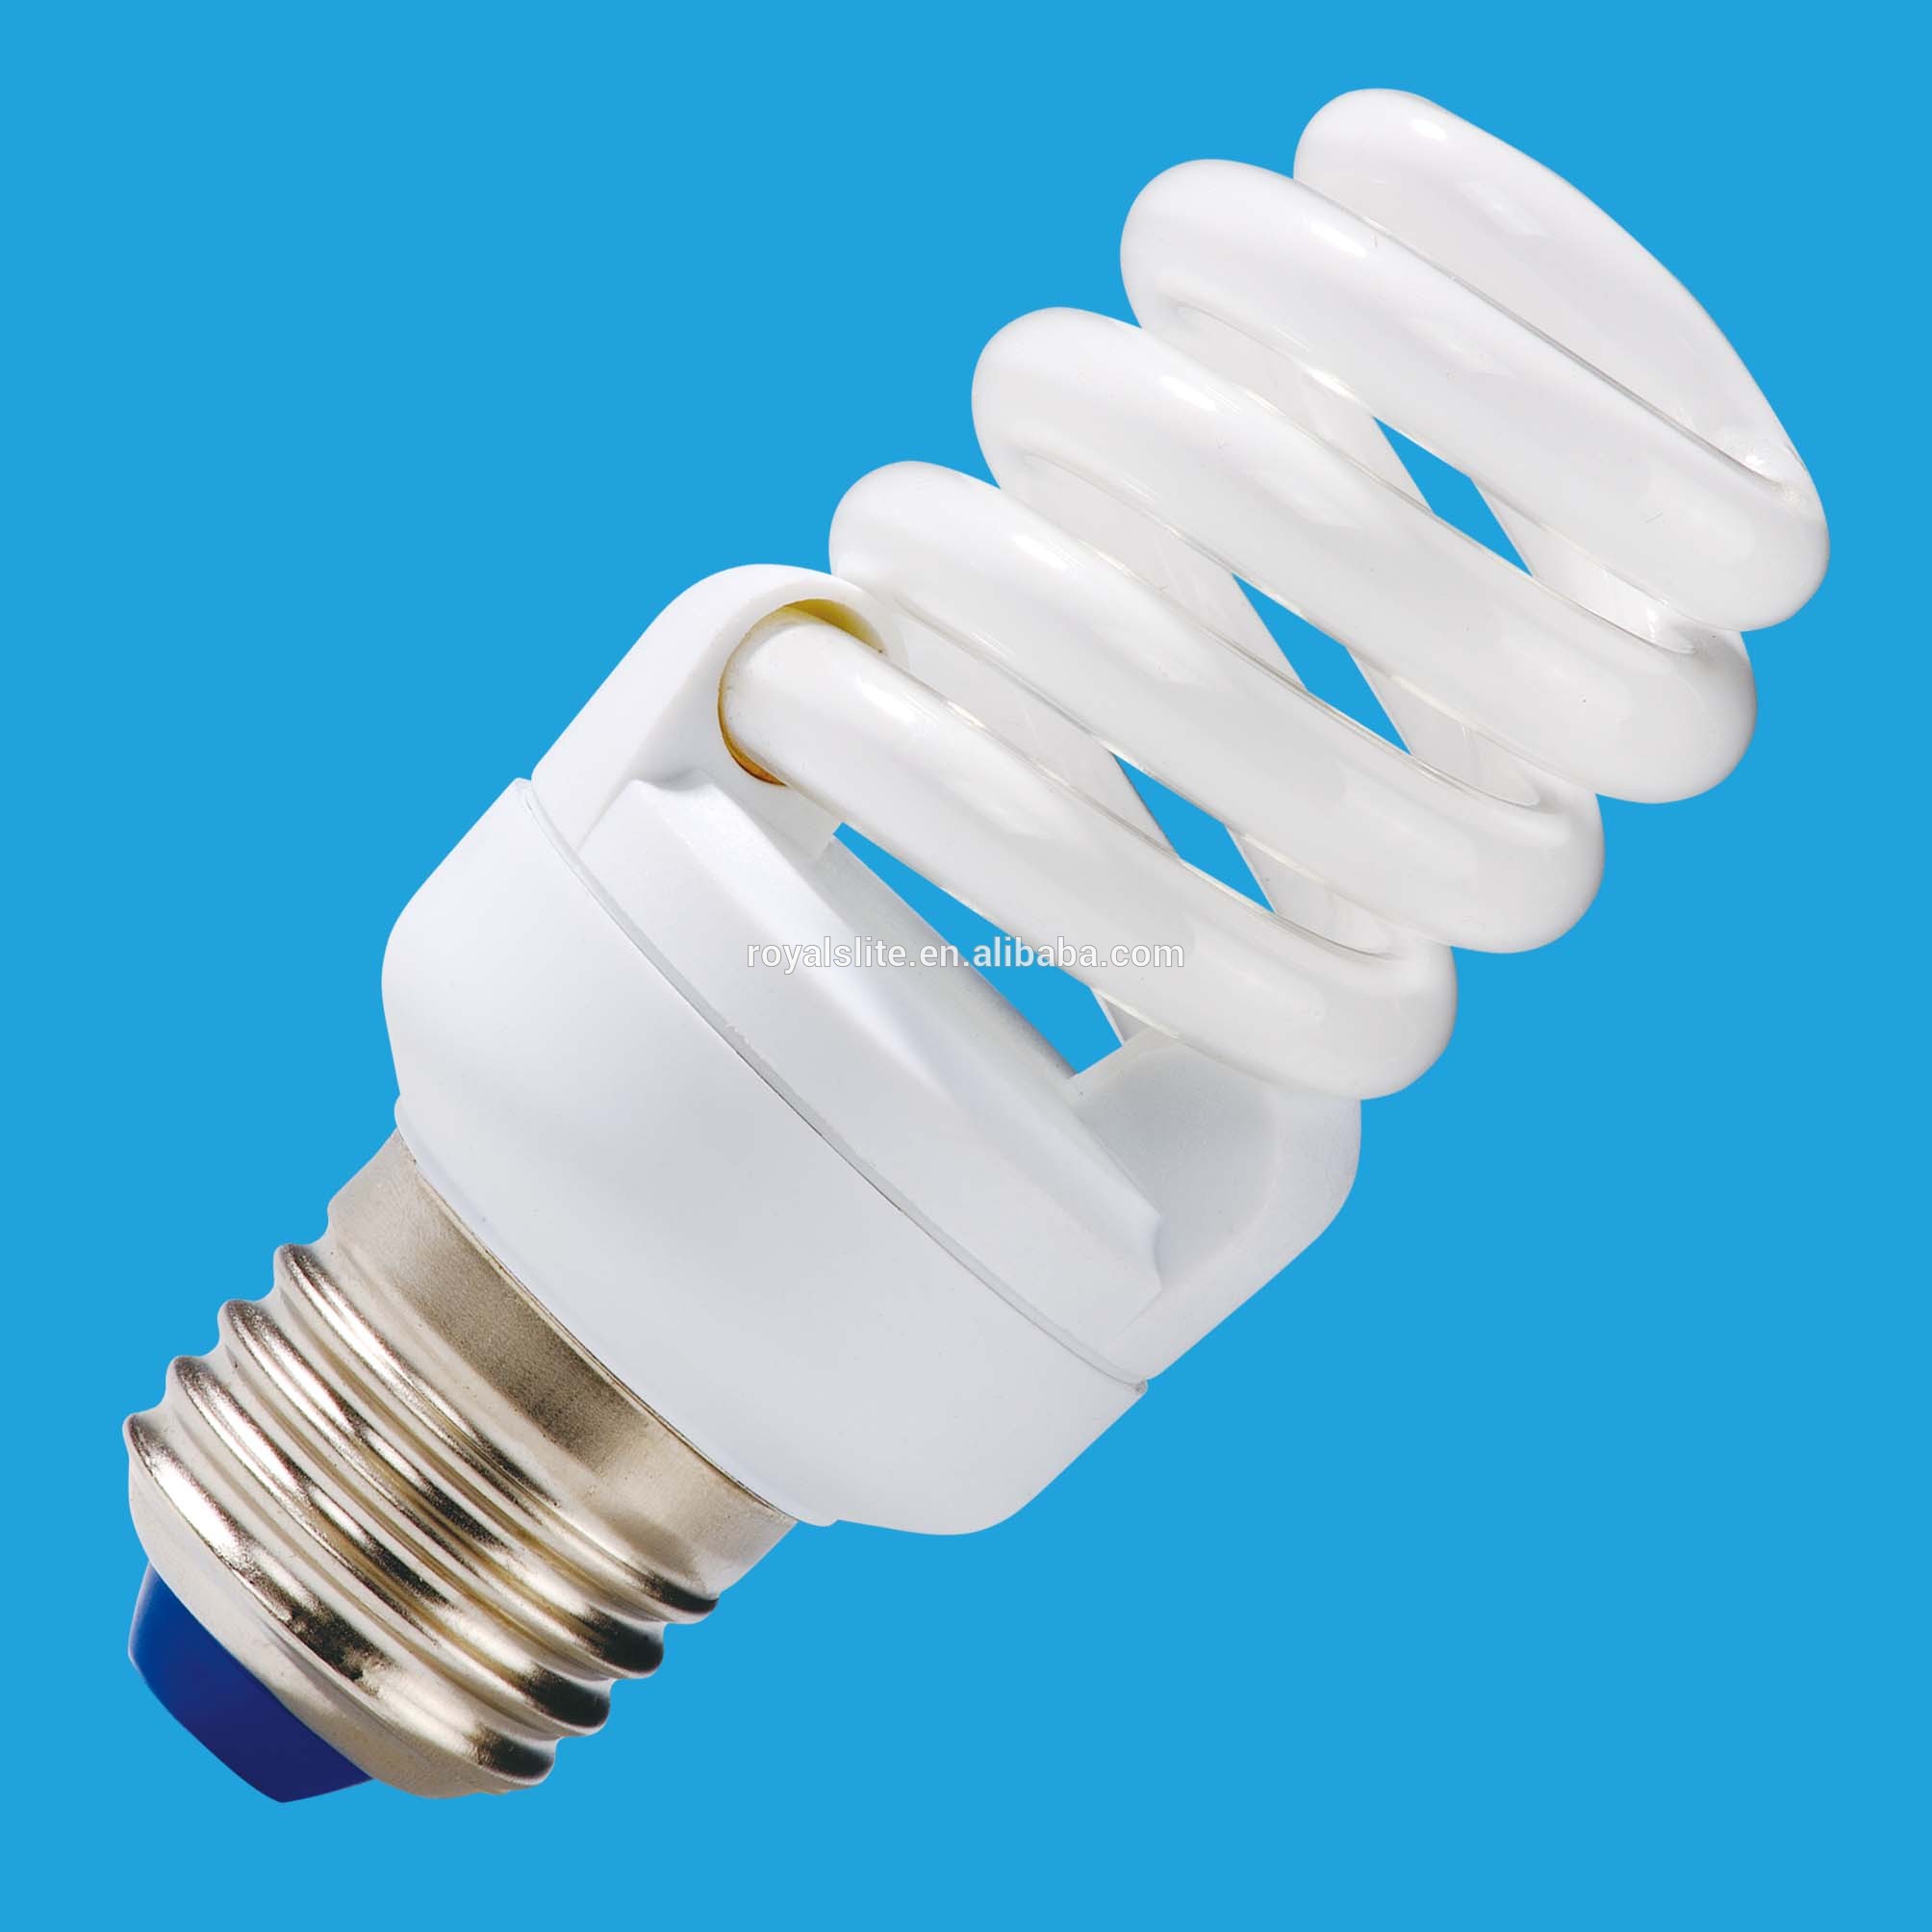 8U energy saving lamps/energy saving bulbs/5W led energy saving light bulbs/CFL 6000H